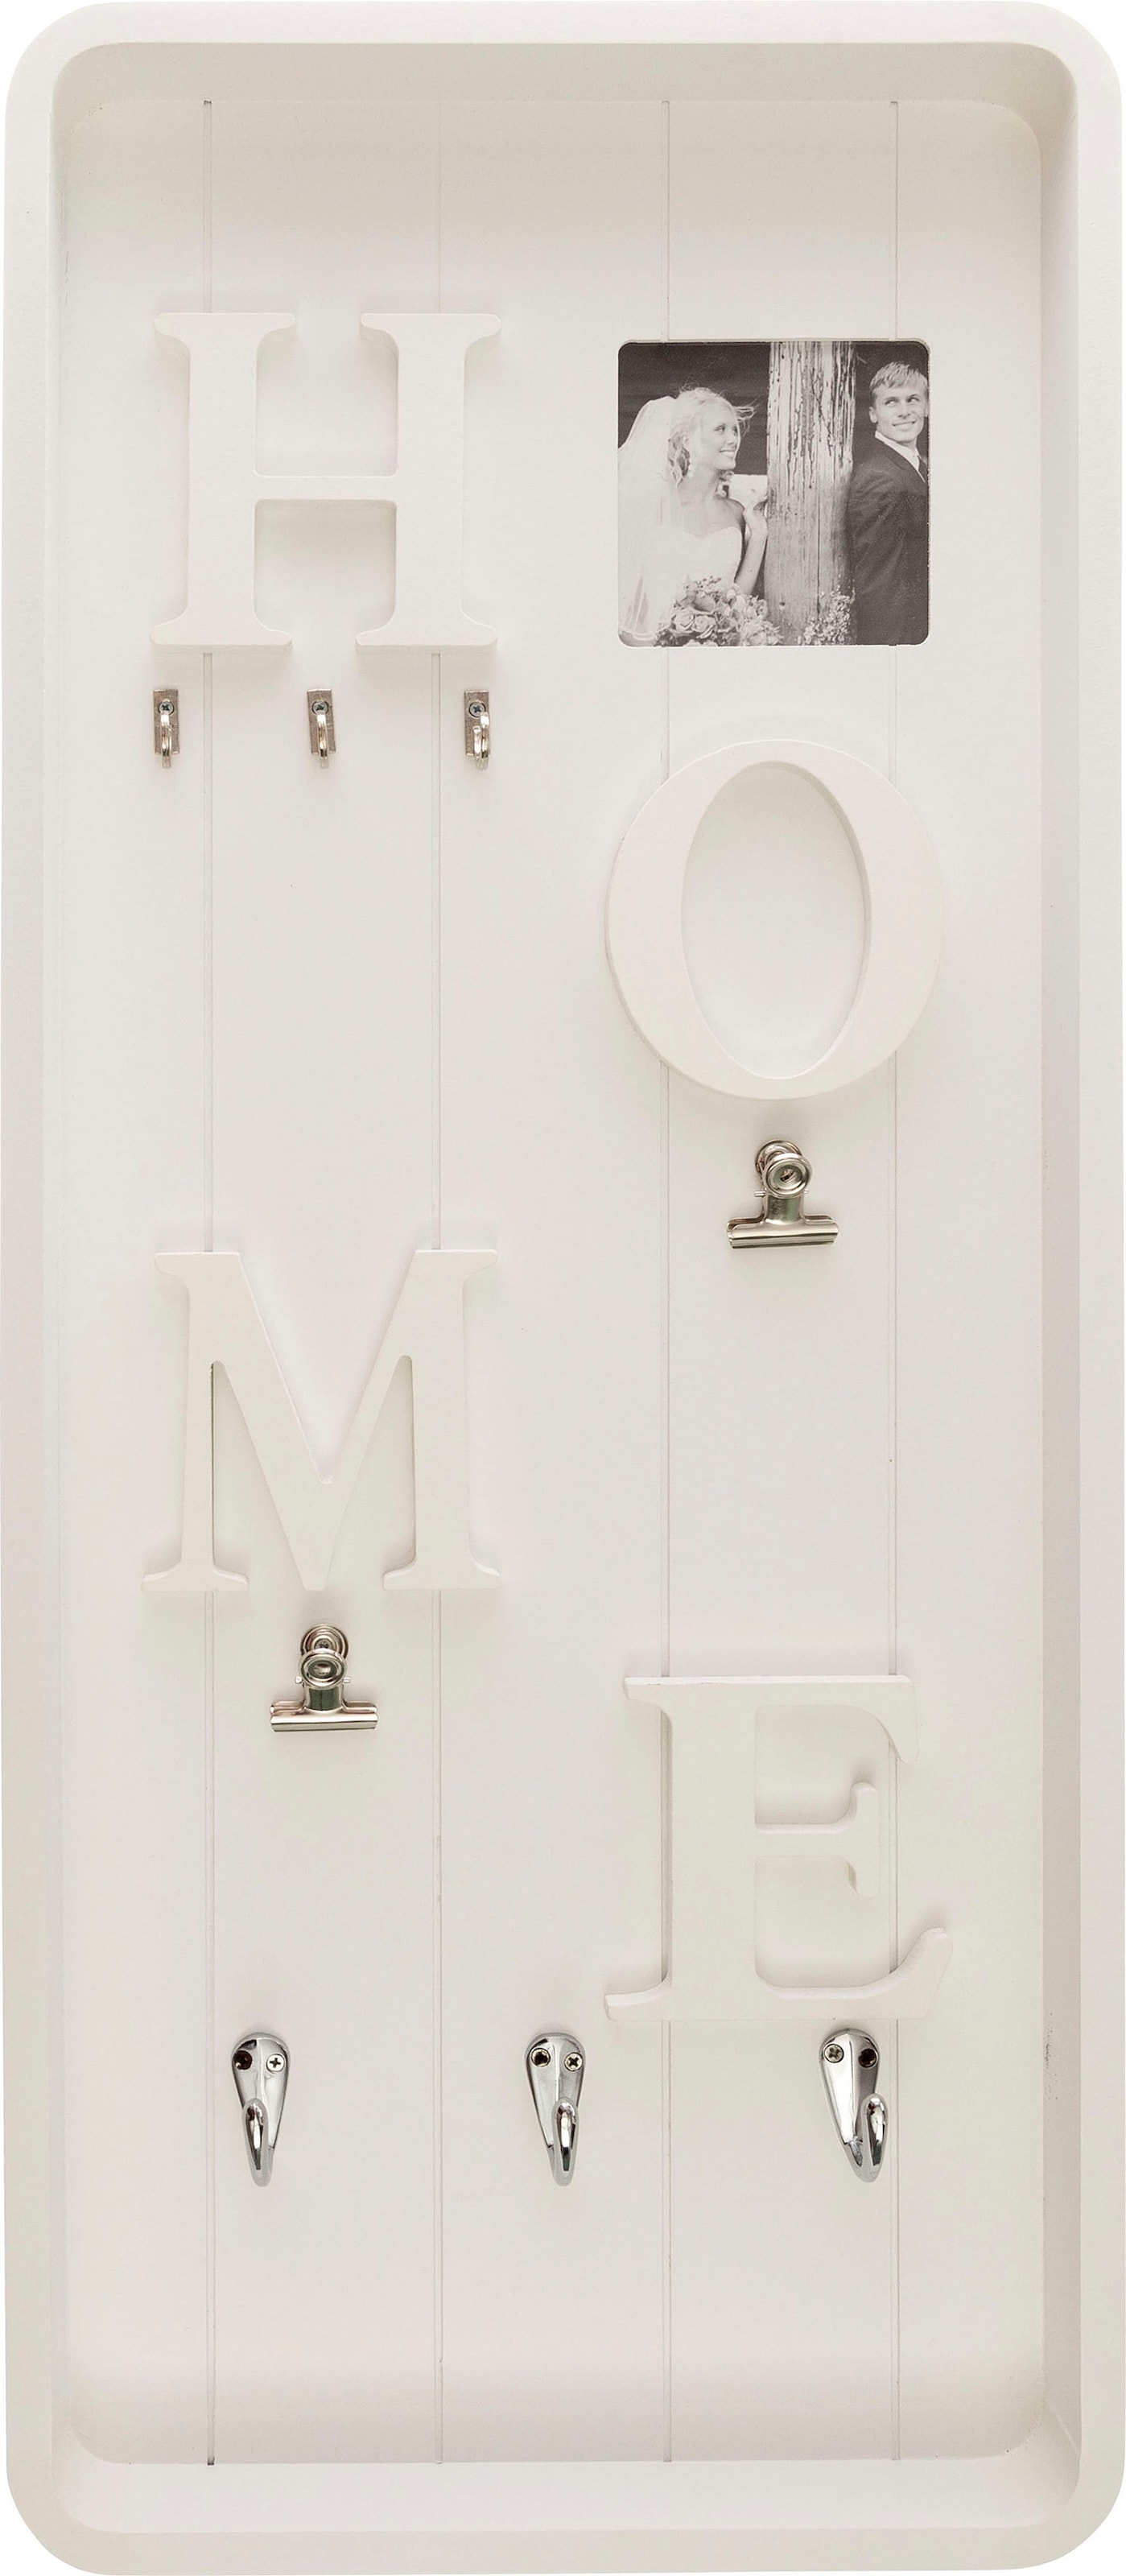 Myflair Möbel & Accessoires Memoboard »Valerina, weiss«, Schlüsselbrett, mit Klemmen & Haken, mit Schriftzug